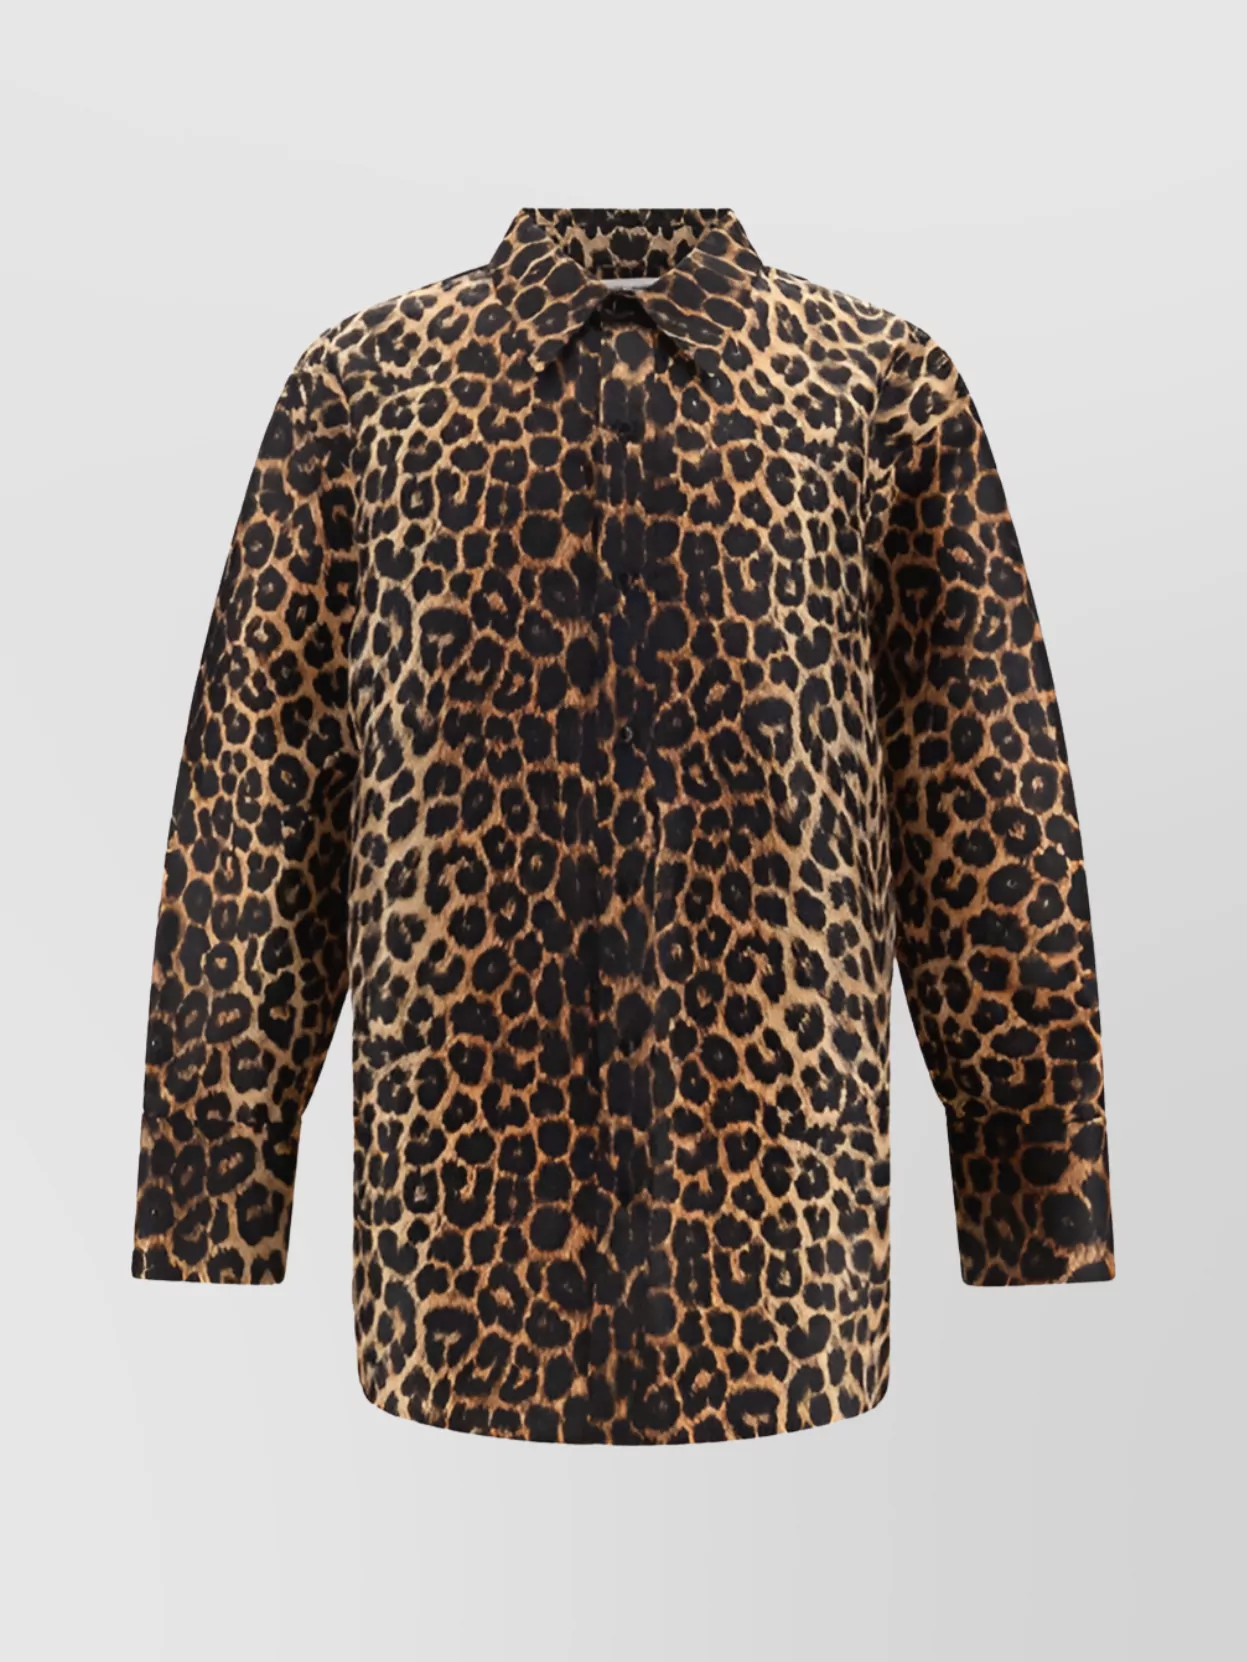 Saint Laurent Leopard Print Oversized Shirt